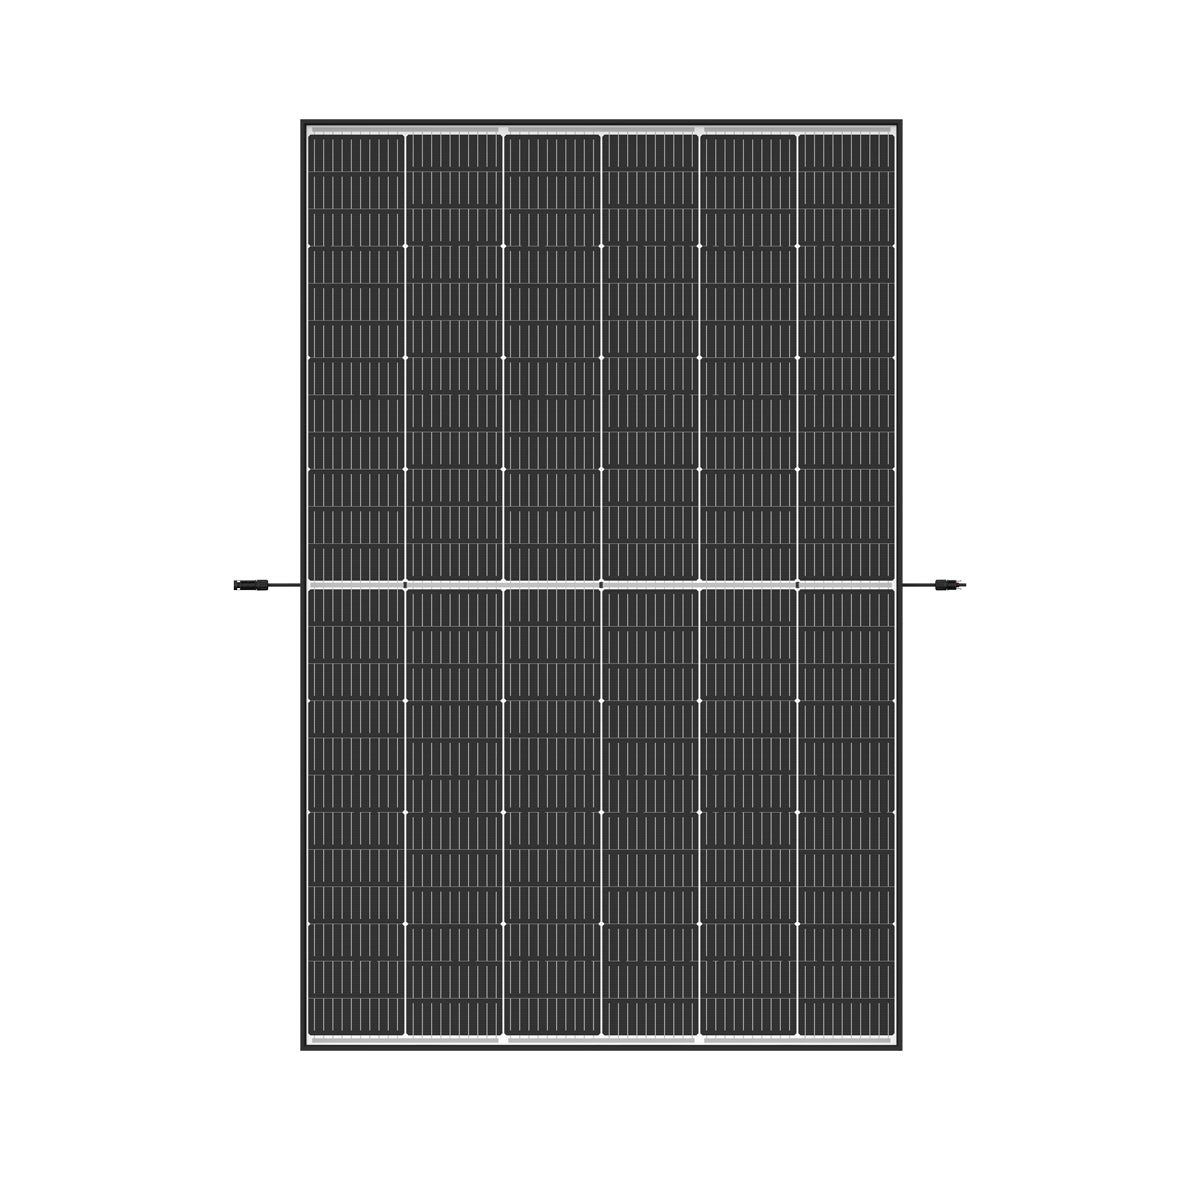 Trina Solar Vertex S Glas / Glas TSM-440NEG9R.28 | Black frame